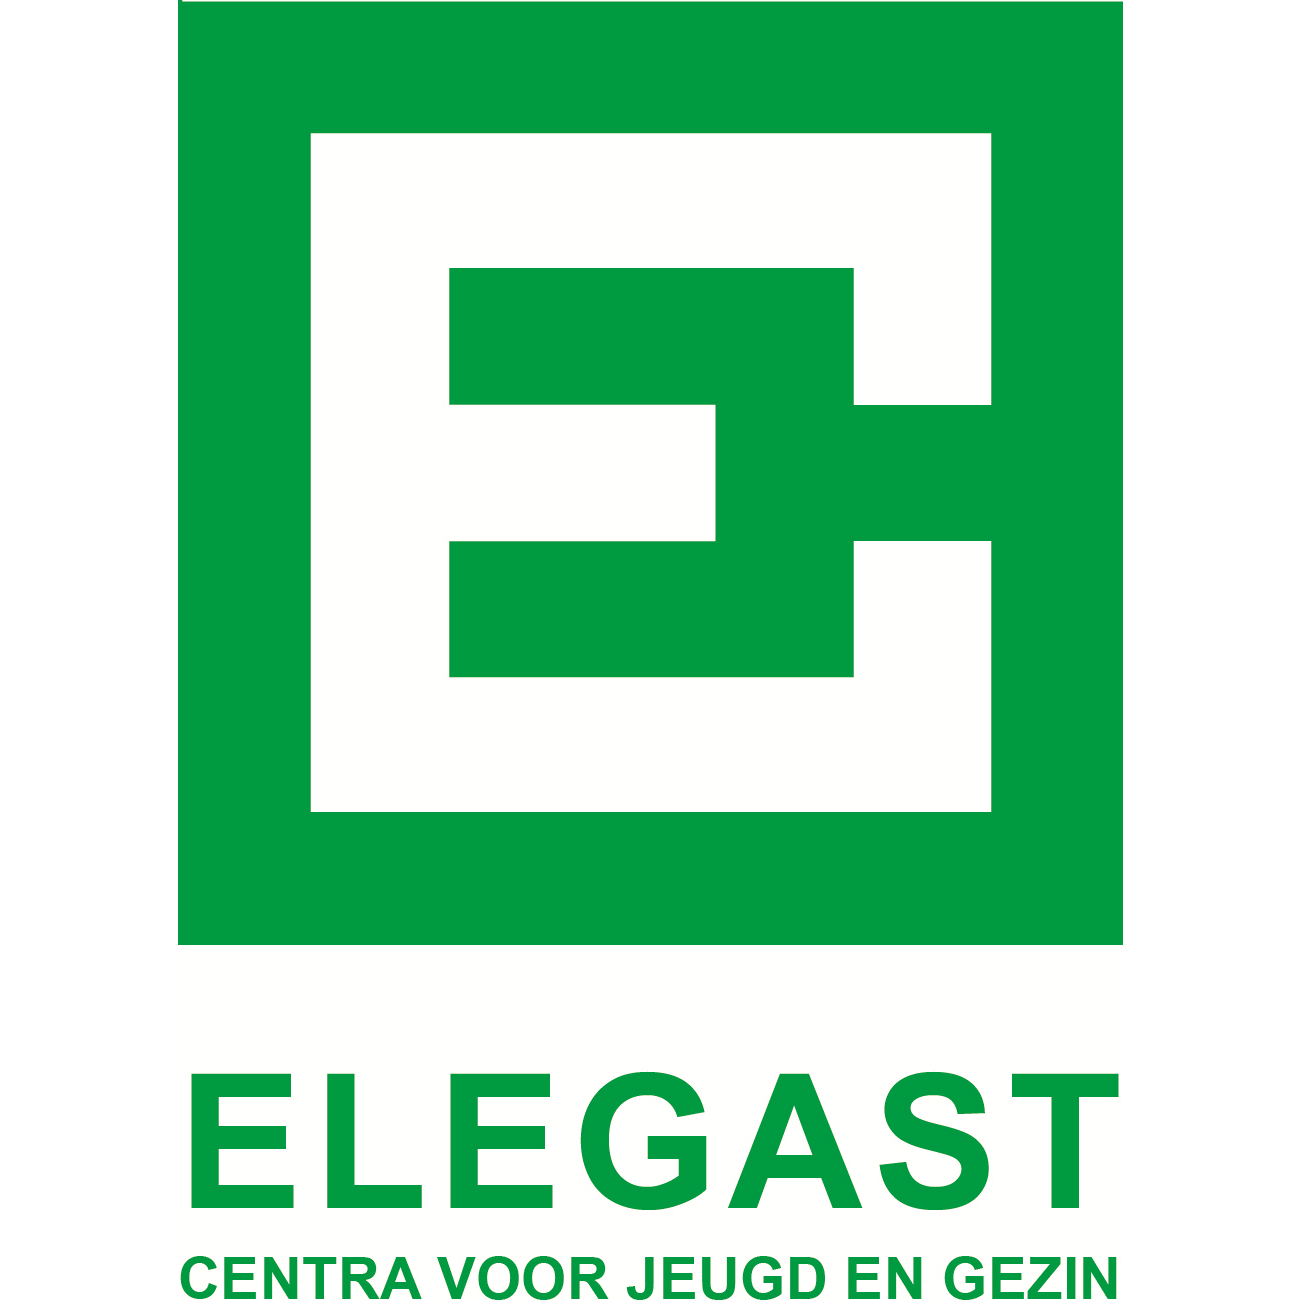 Elegast